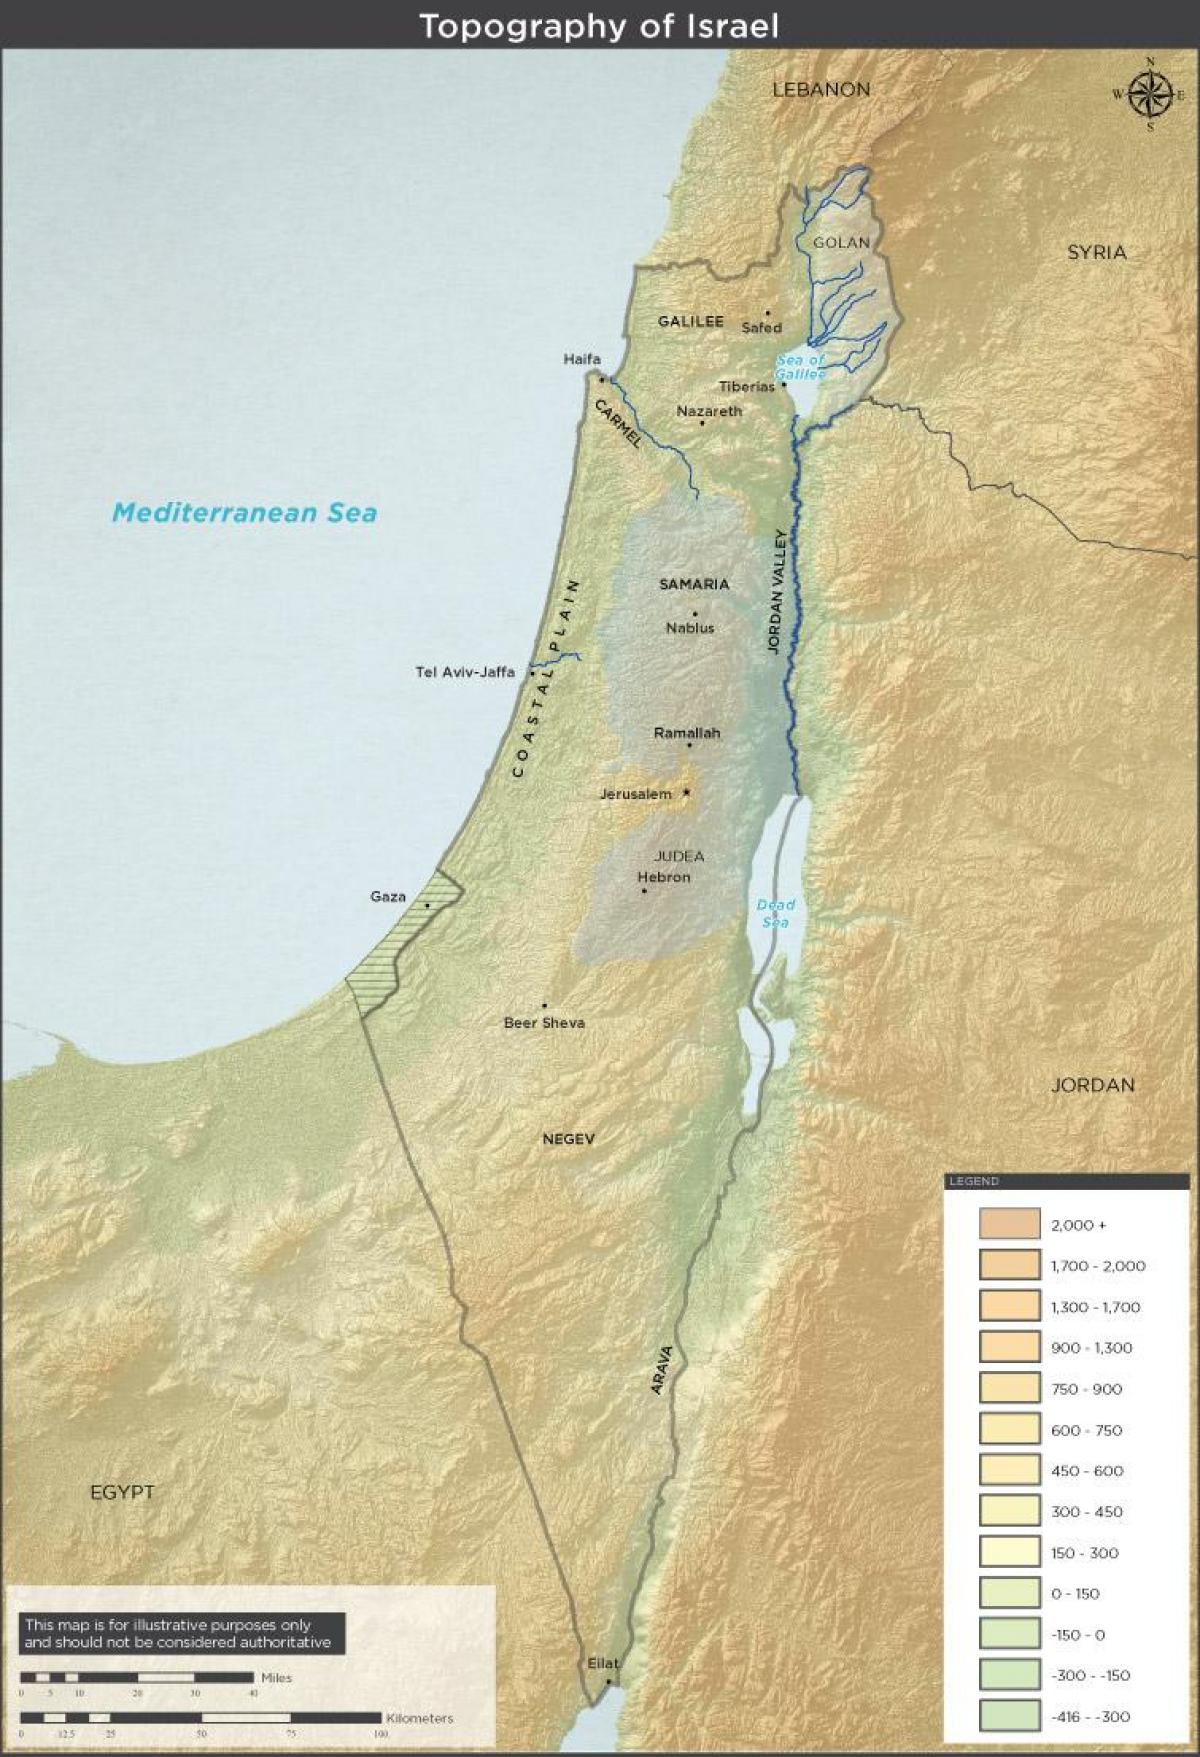 خريطة طوبوغرافية لإسرائيل